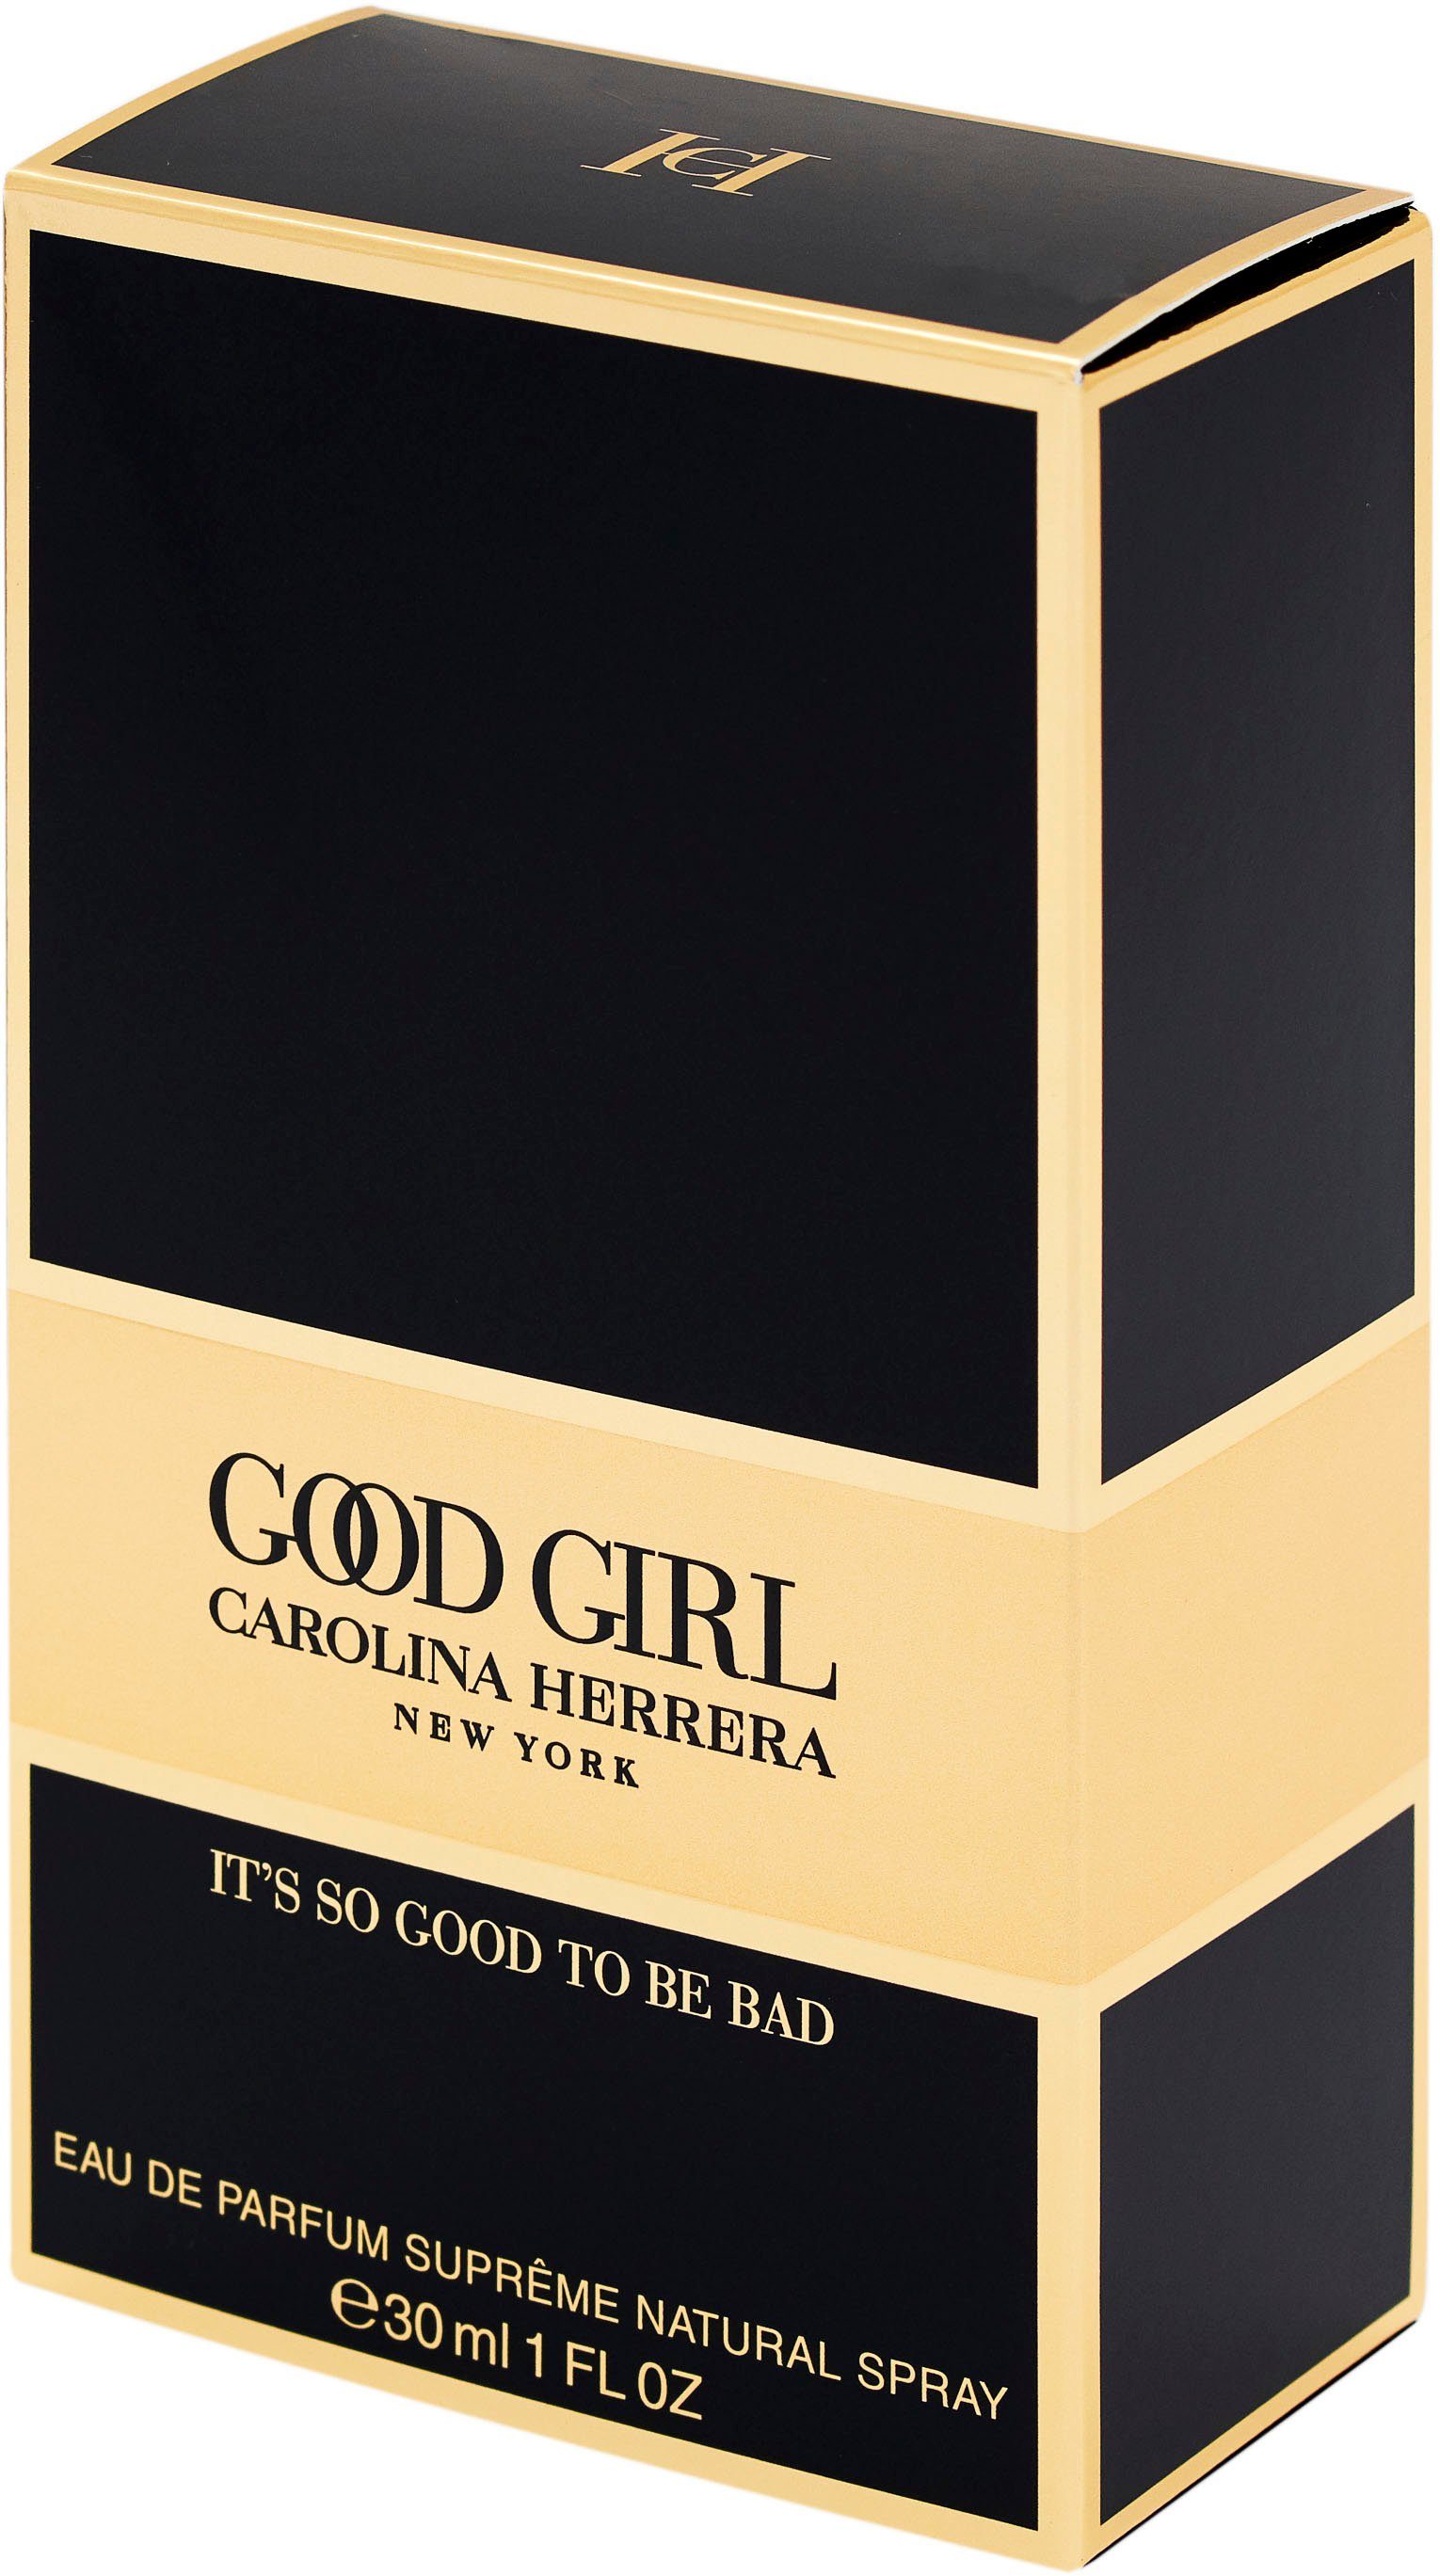 Parfum Carolina Eau de Herrera Girl Supreme Good